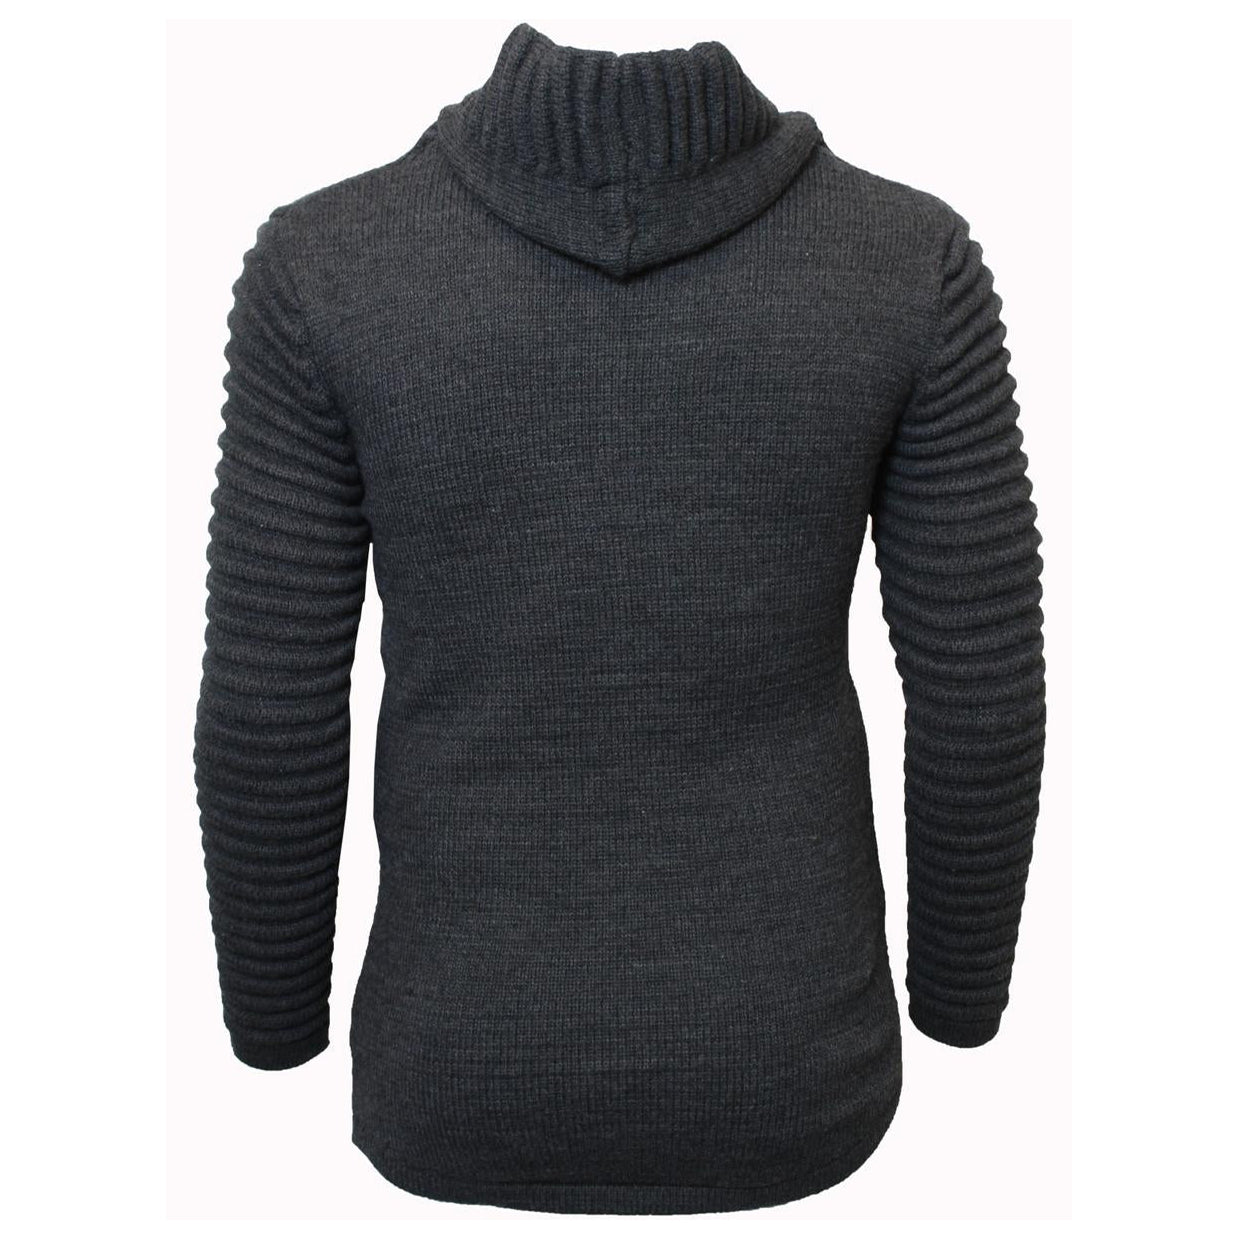 M4215 Makobi Ribbed Elongated Sweater - Charcoal Gray